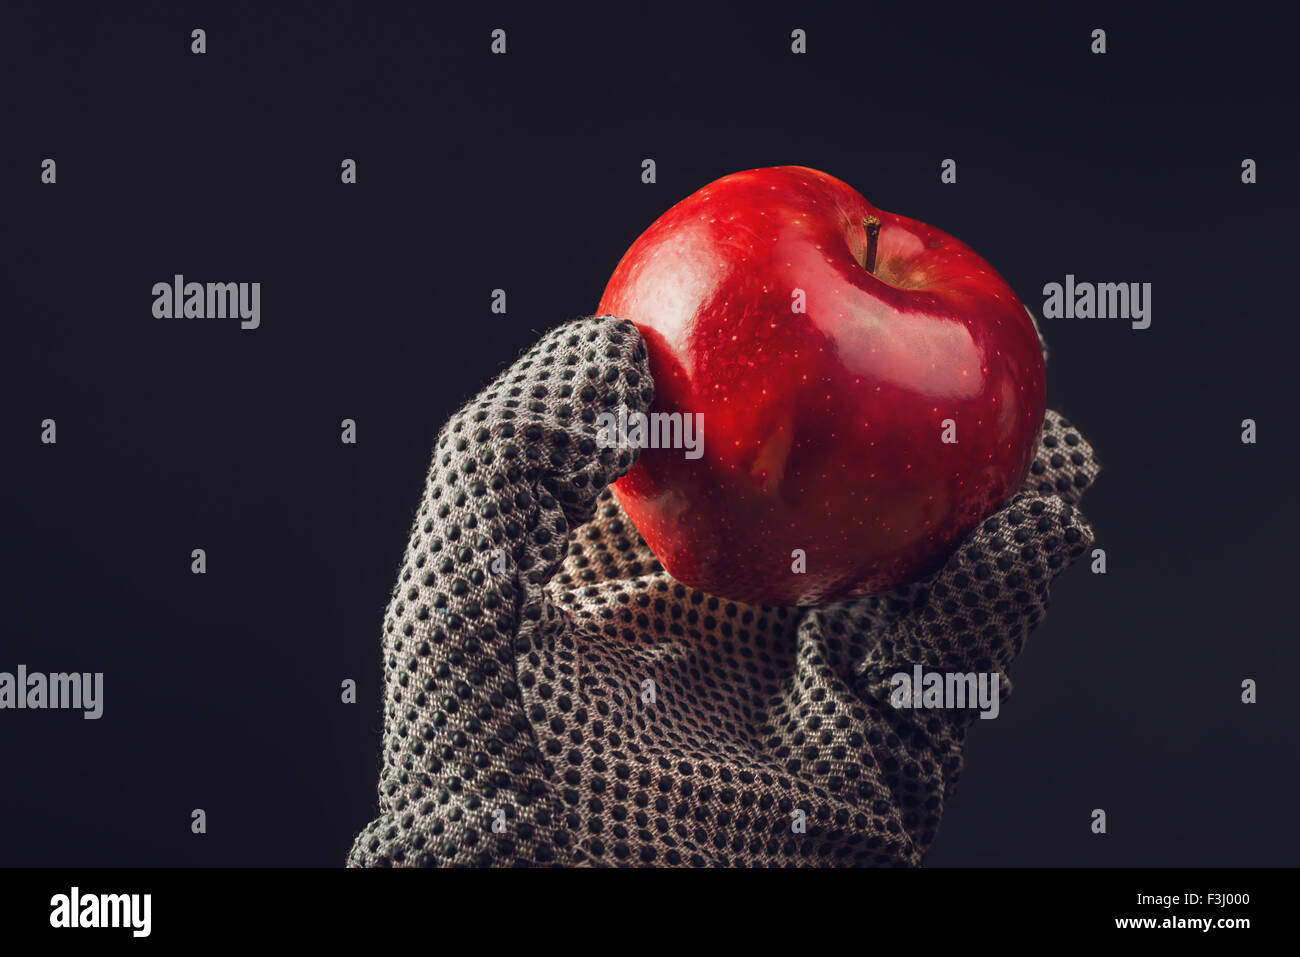 Selettore di Apple, mano azienda biologica mela rossa Foto Stock